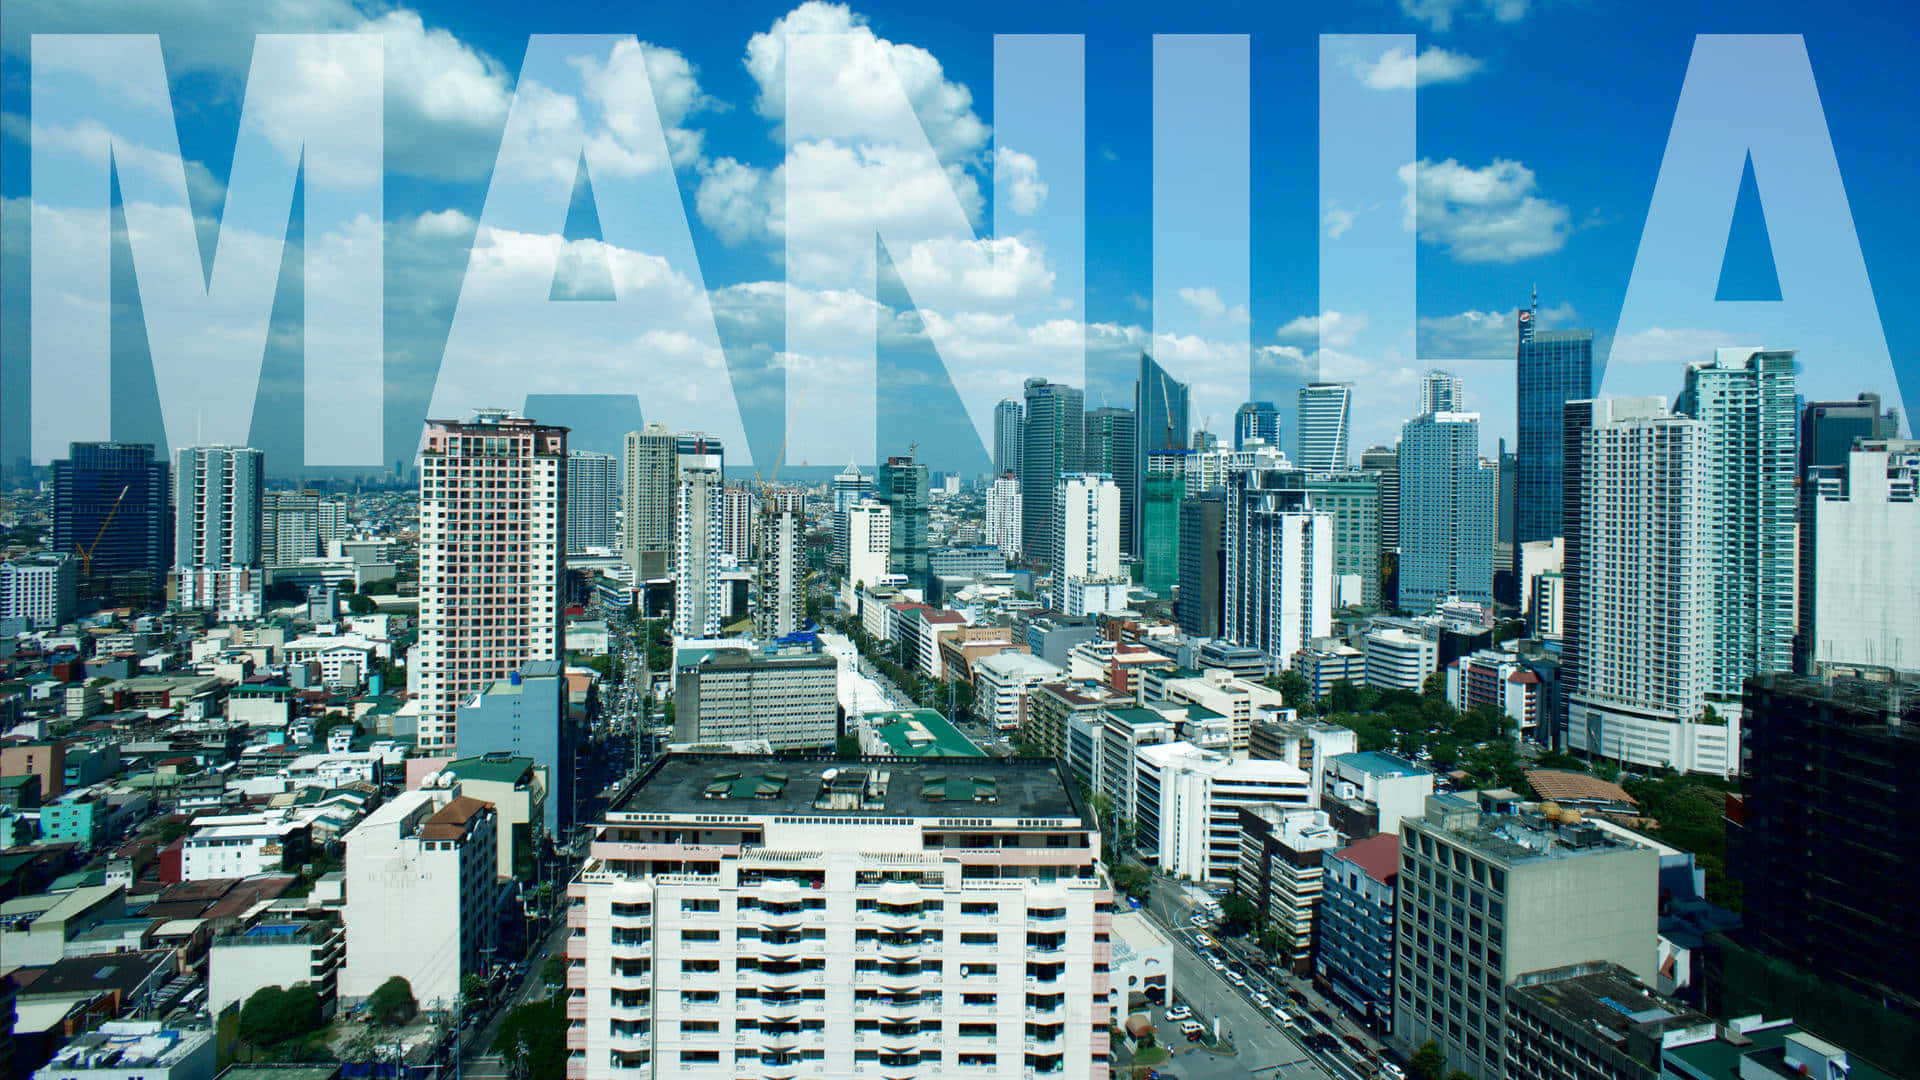 Einestadtszene Mit Dem Wort Manila Darauf.